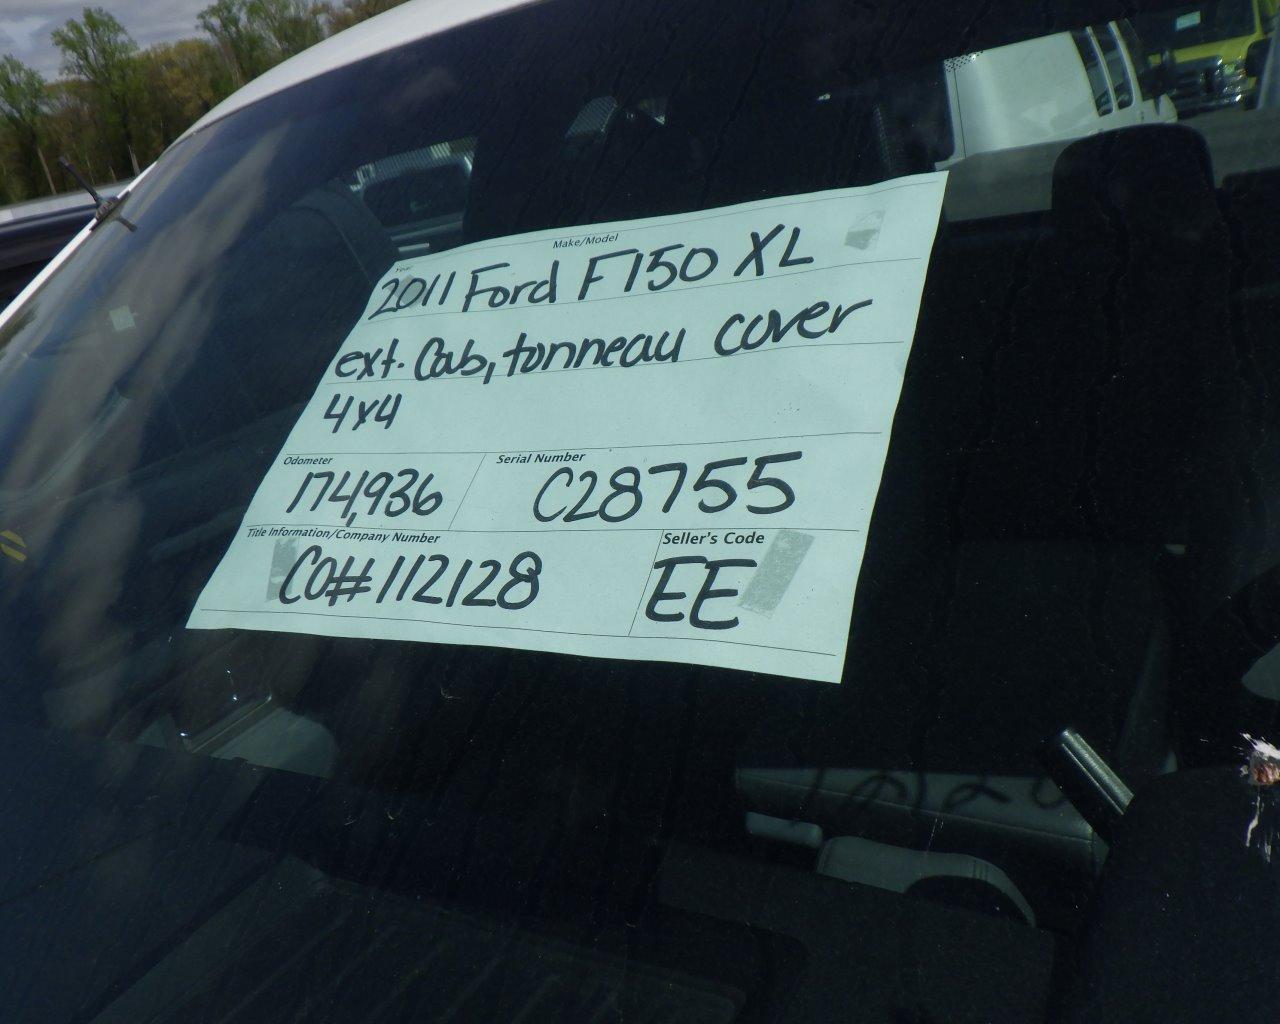 2011 FORD F-150 XL Ext Cab   Tonneau Cover   4x4 s/n:C28755